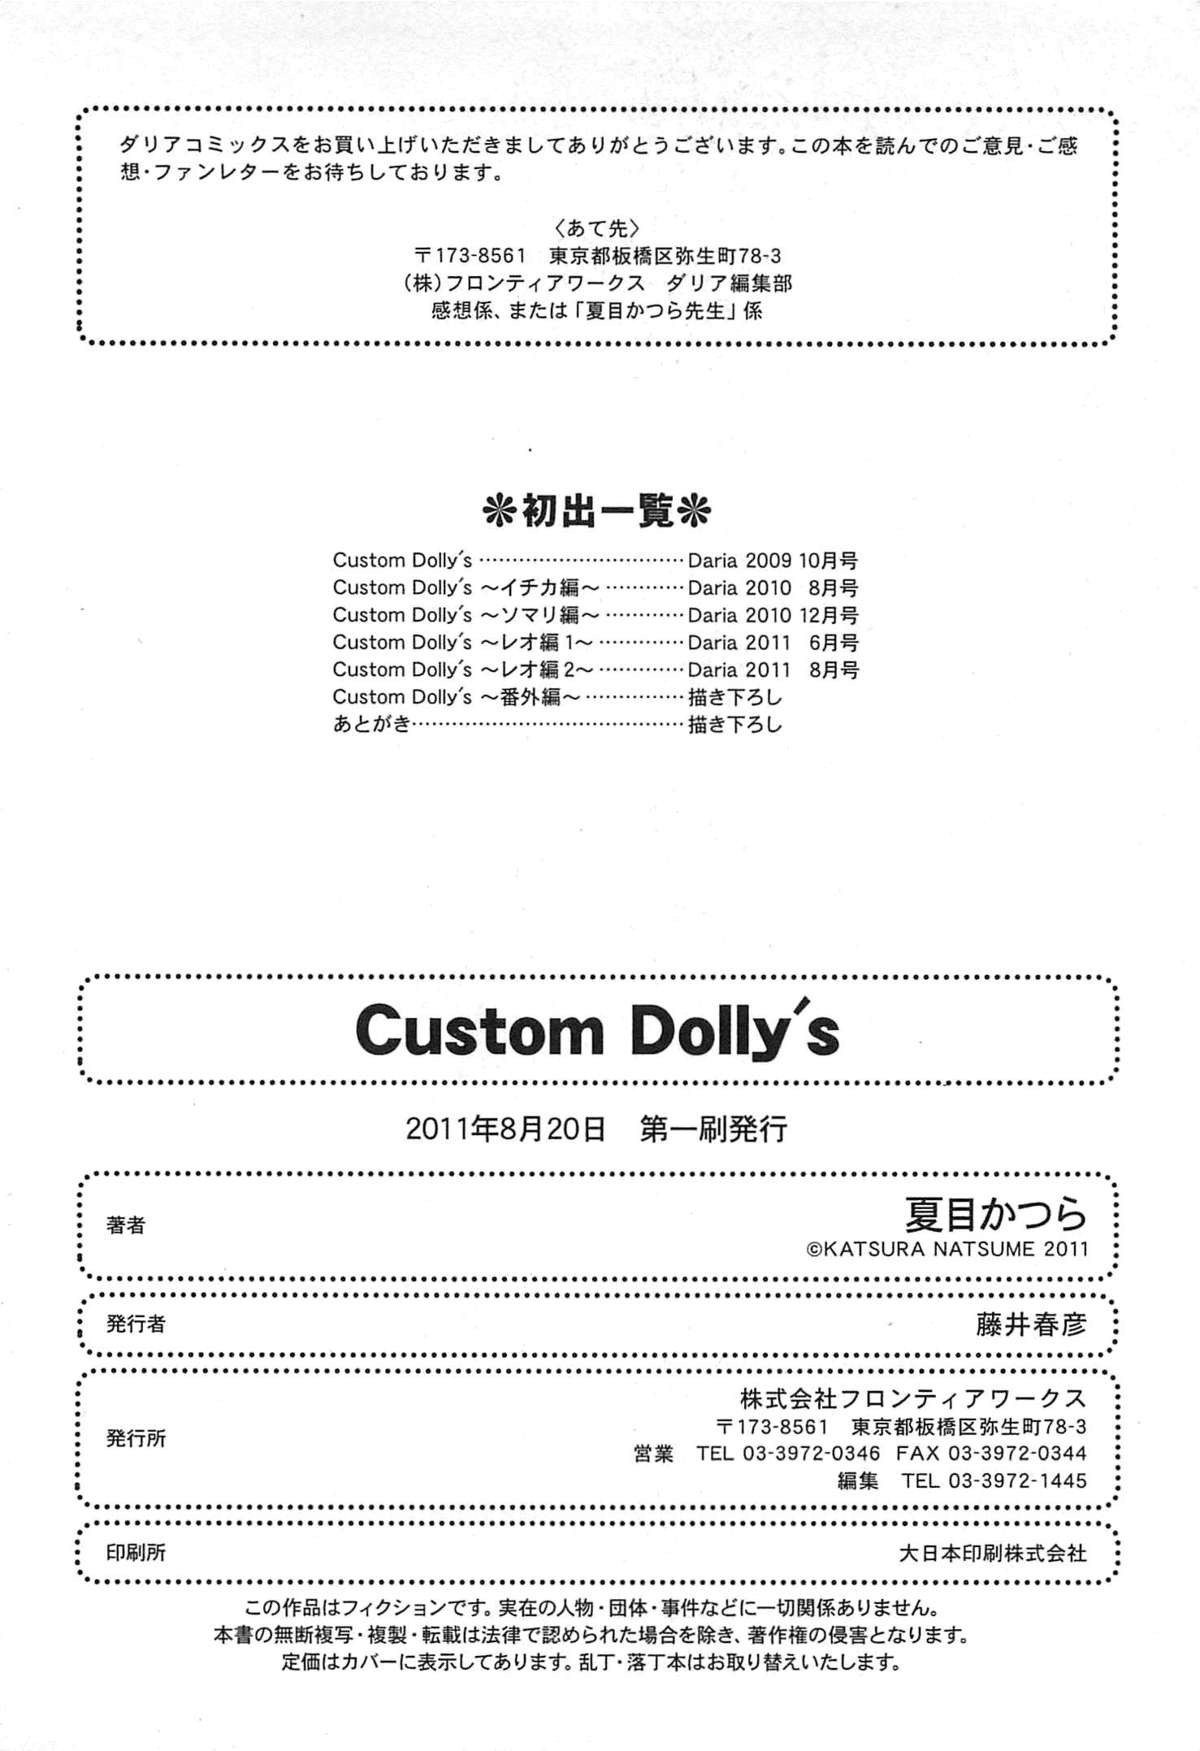 [夏目かつら] Custom Dolly's カスタムドリーズ